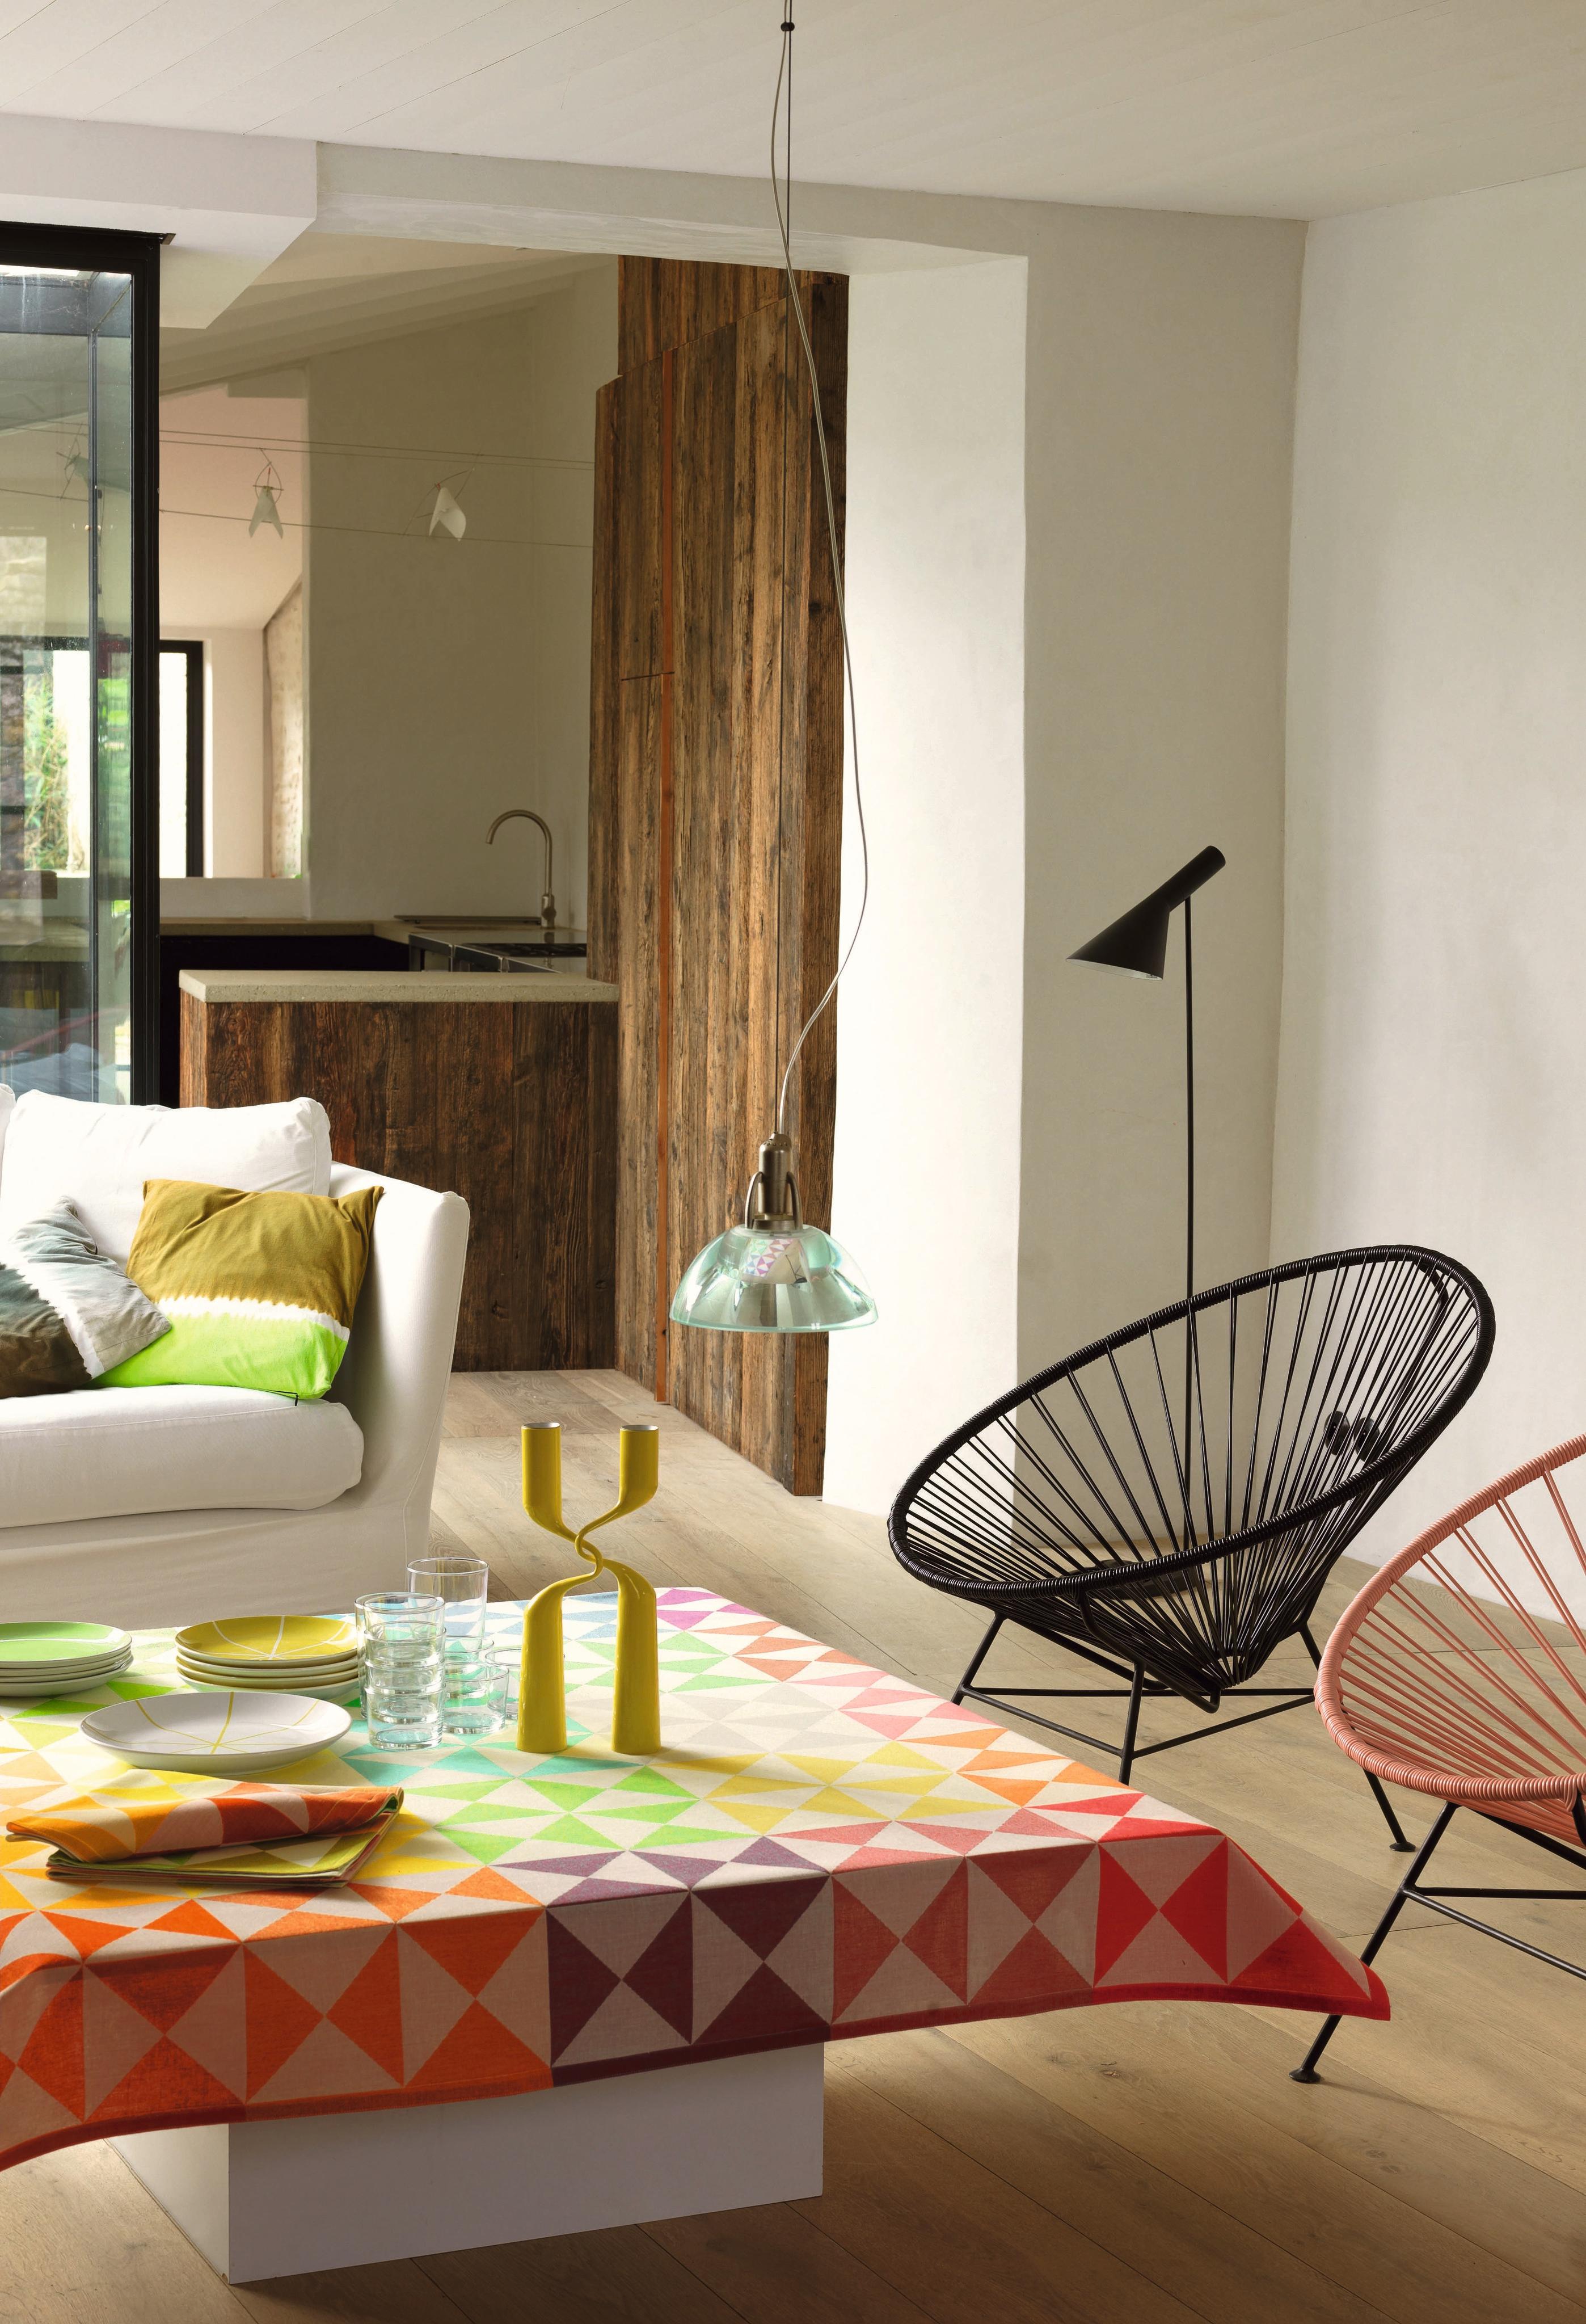 Wohnzimmer mit farbigen Accessoires gestalten #couchtisch #sessel #stehlampe #sofakissen #sofa #korbsessel #acapulcochair ©Le Jacquard Francais